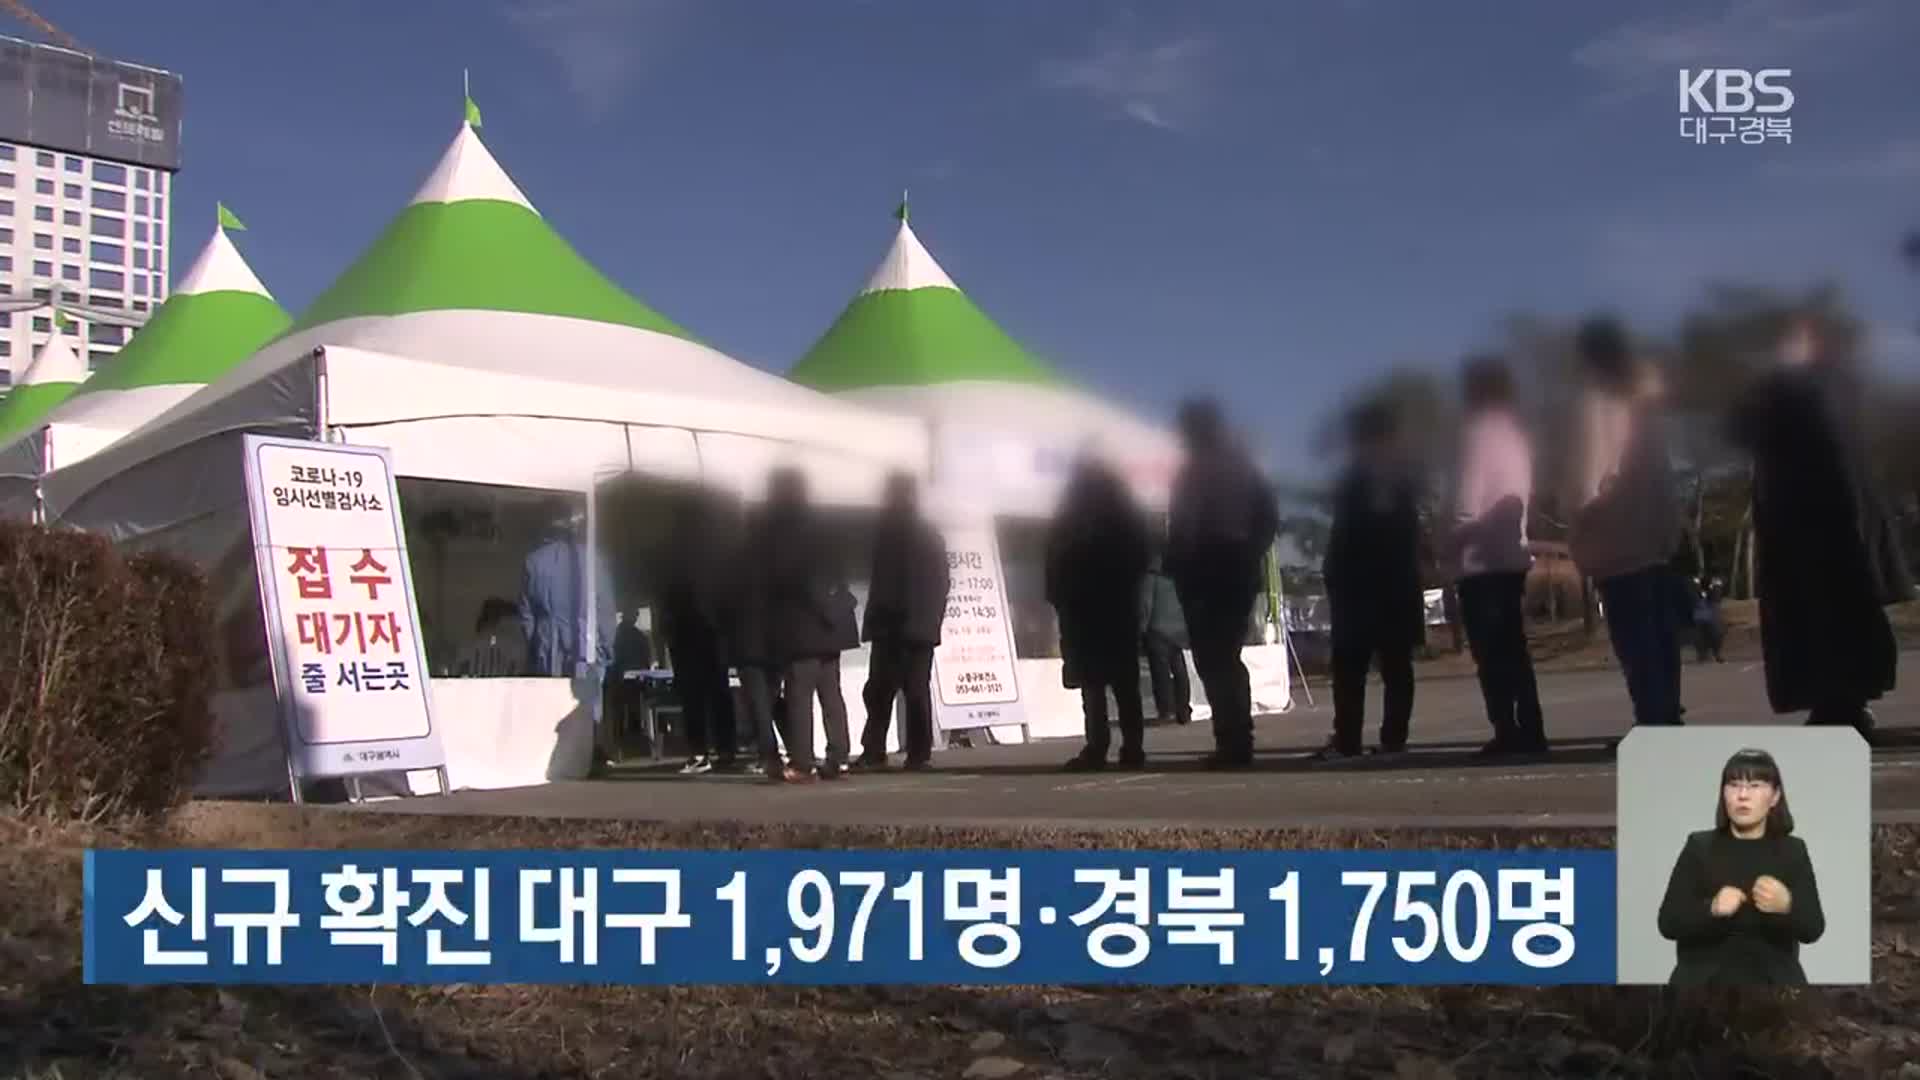 코로나19 신규 확진 대구 1,971명·경북 1,750명